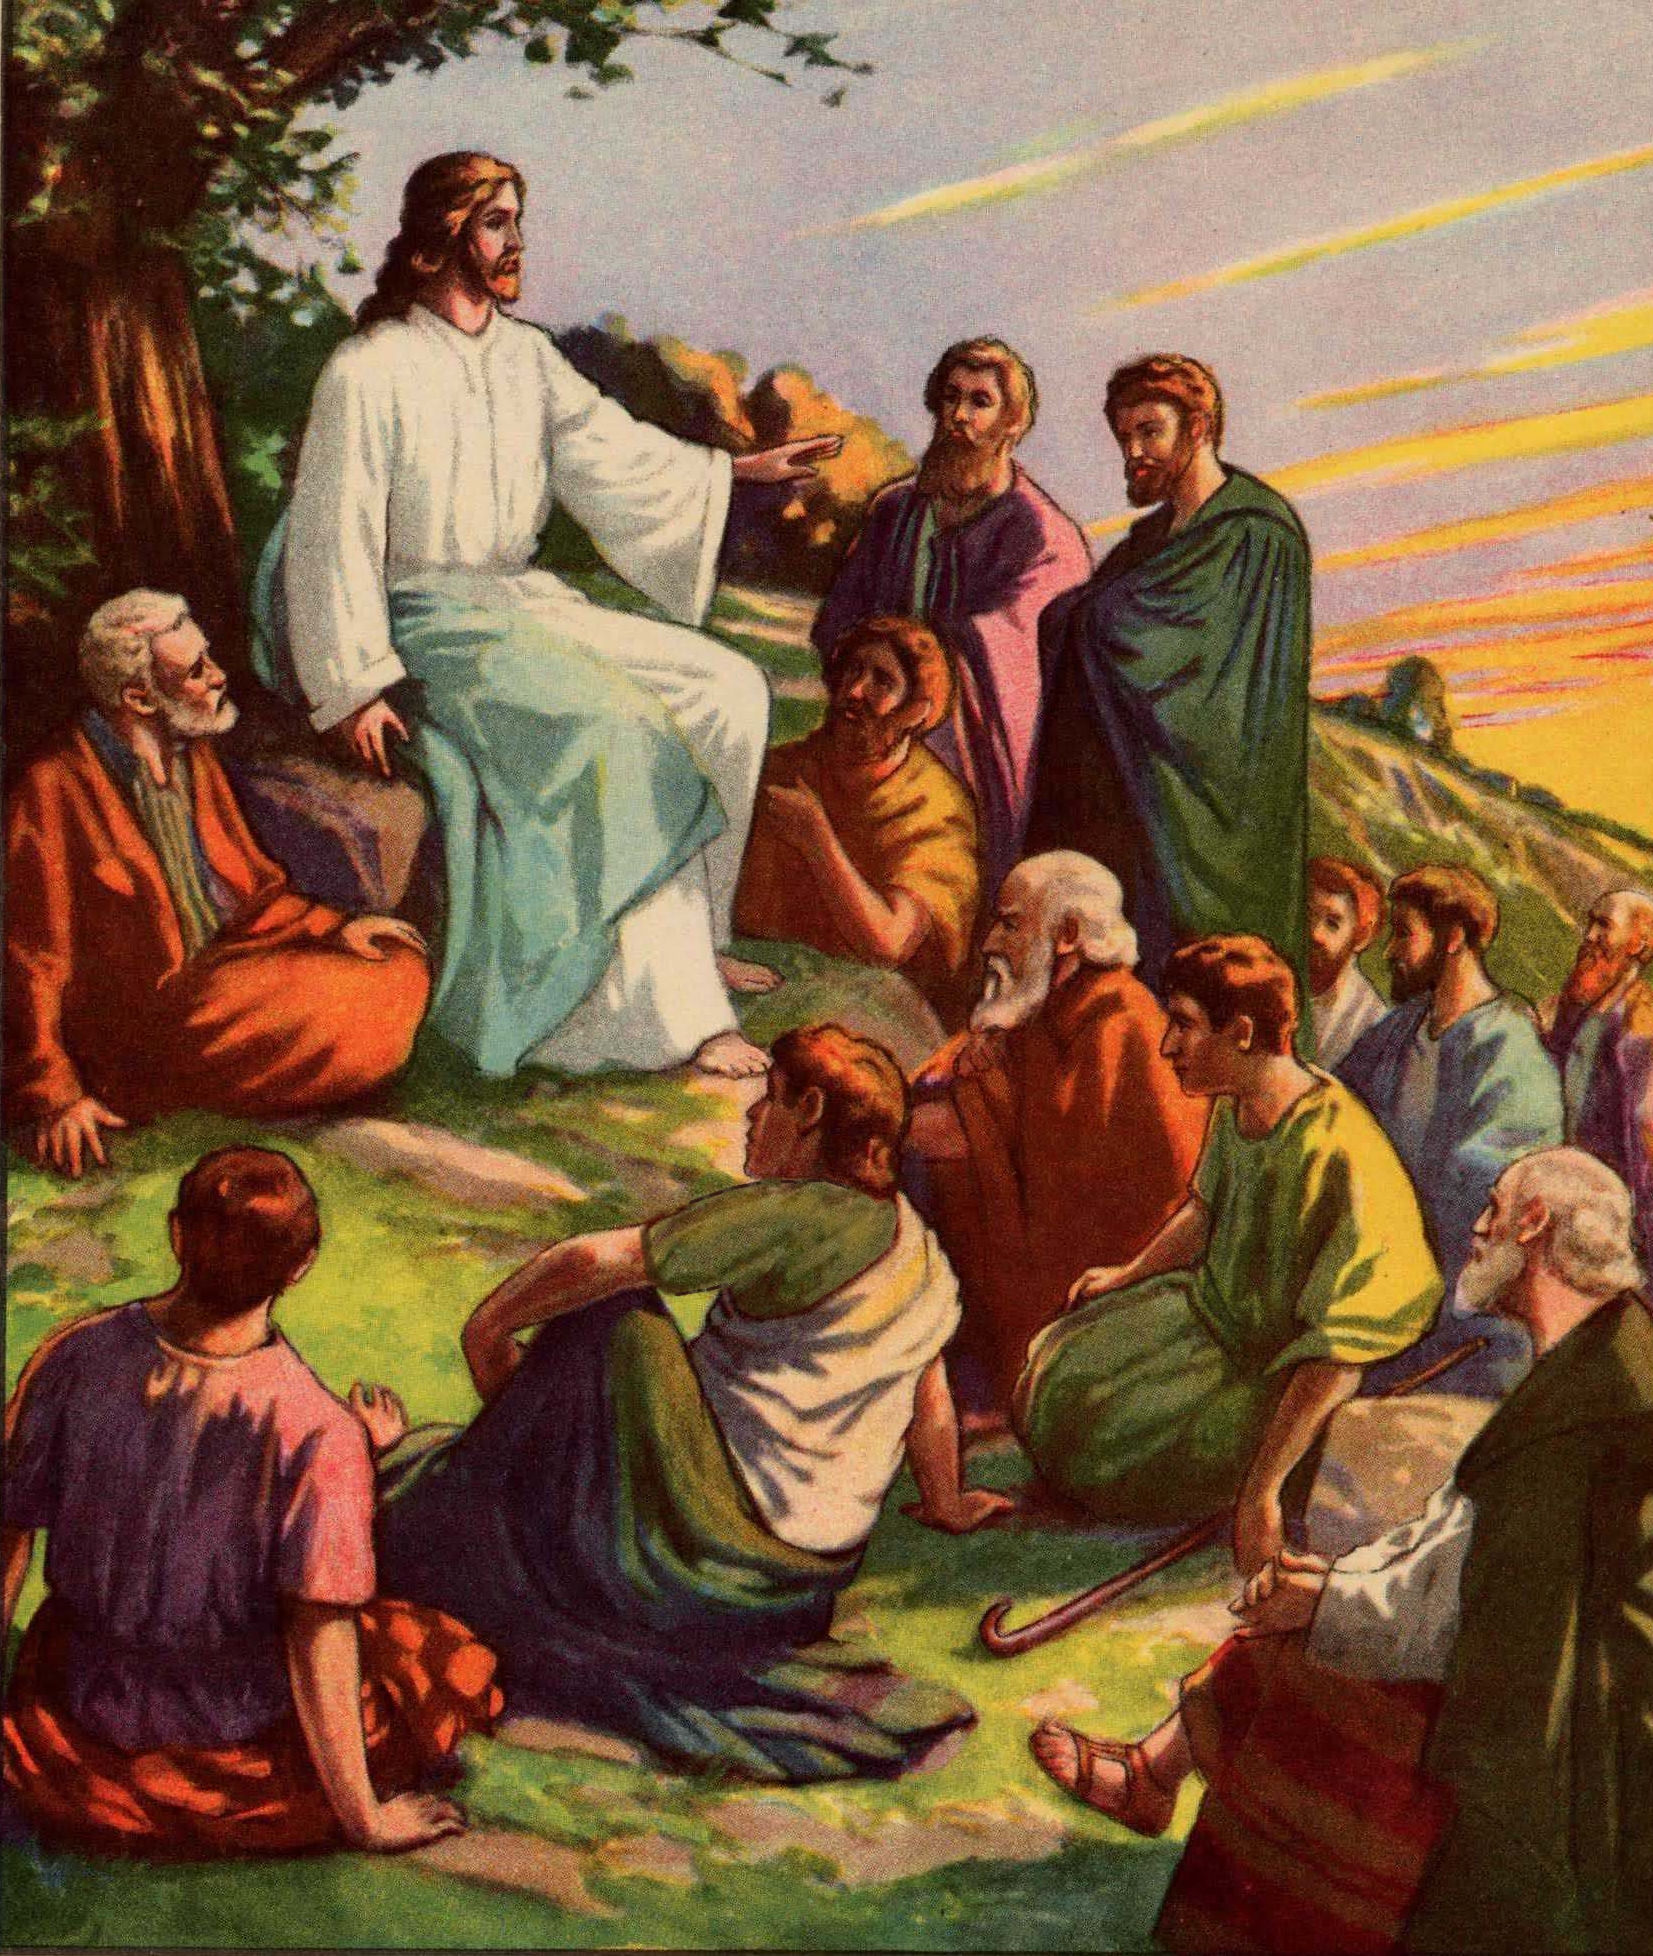 jesus teaching